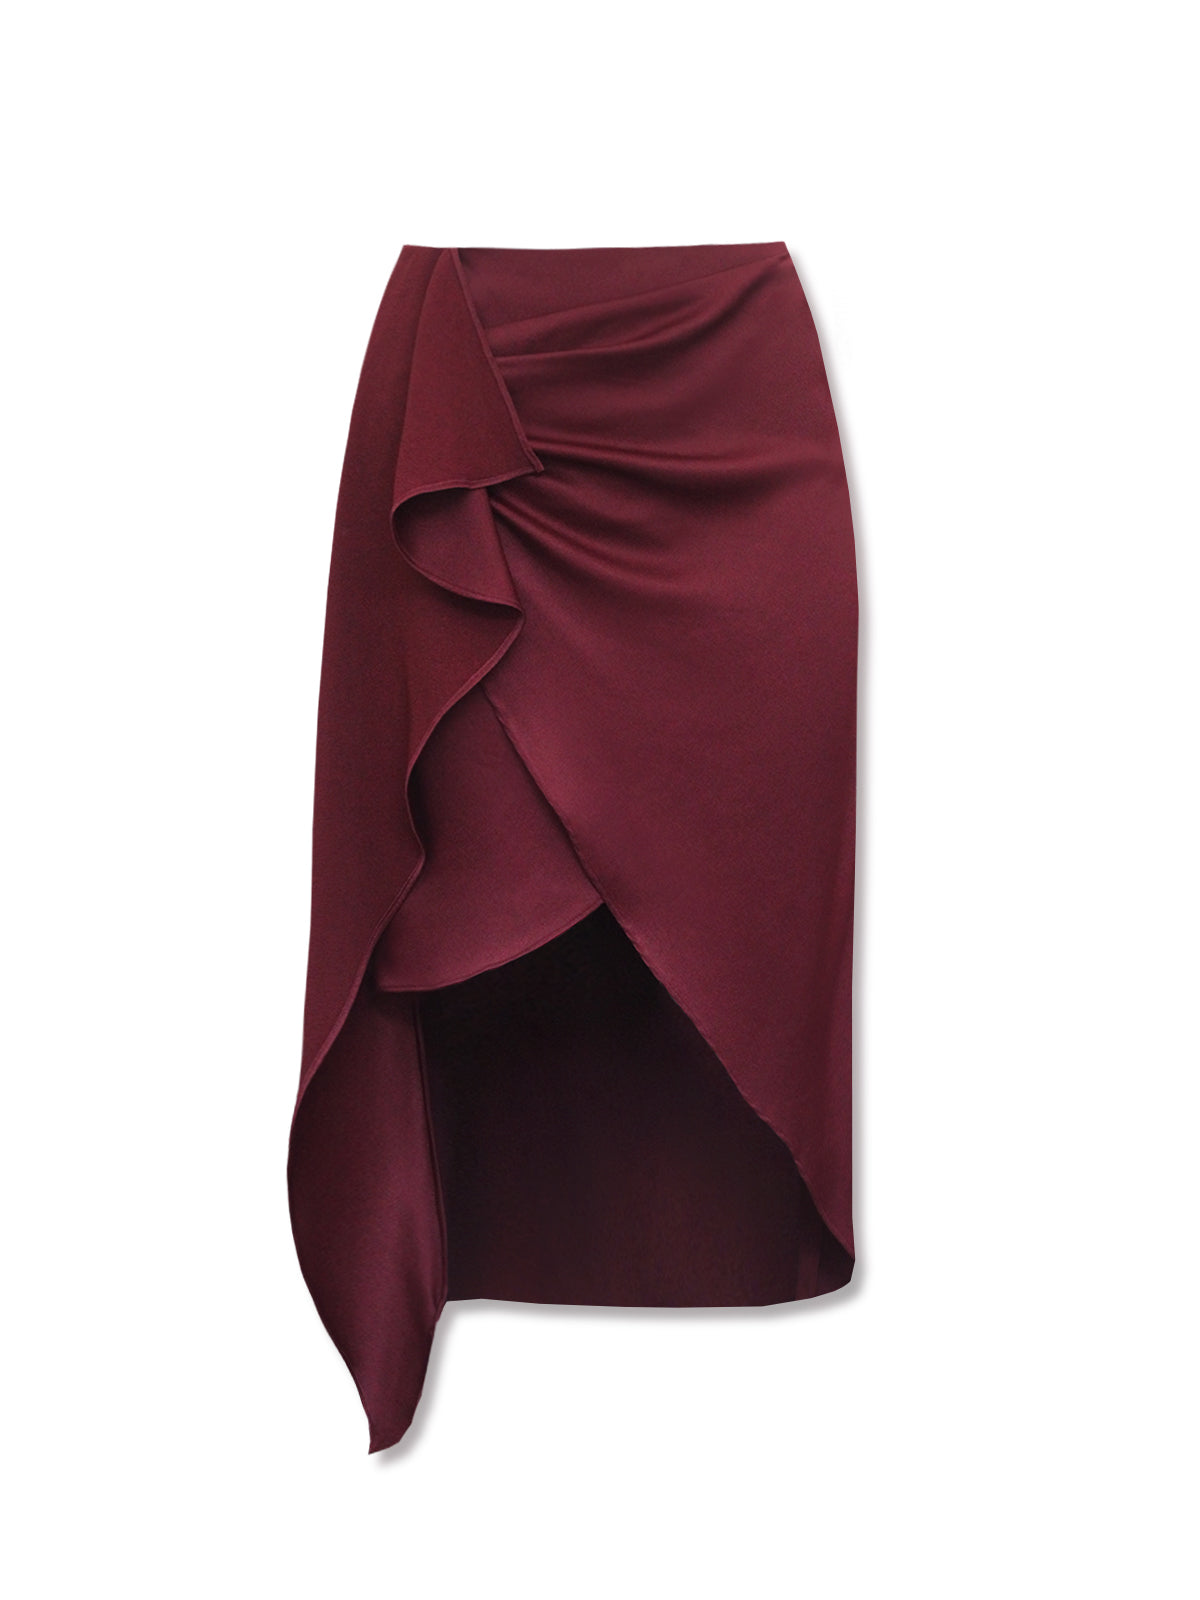 ELONA wrap skirt - merlot